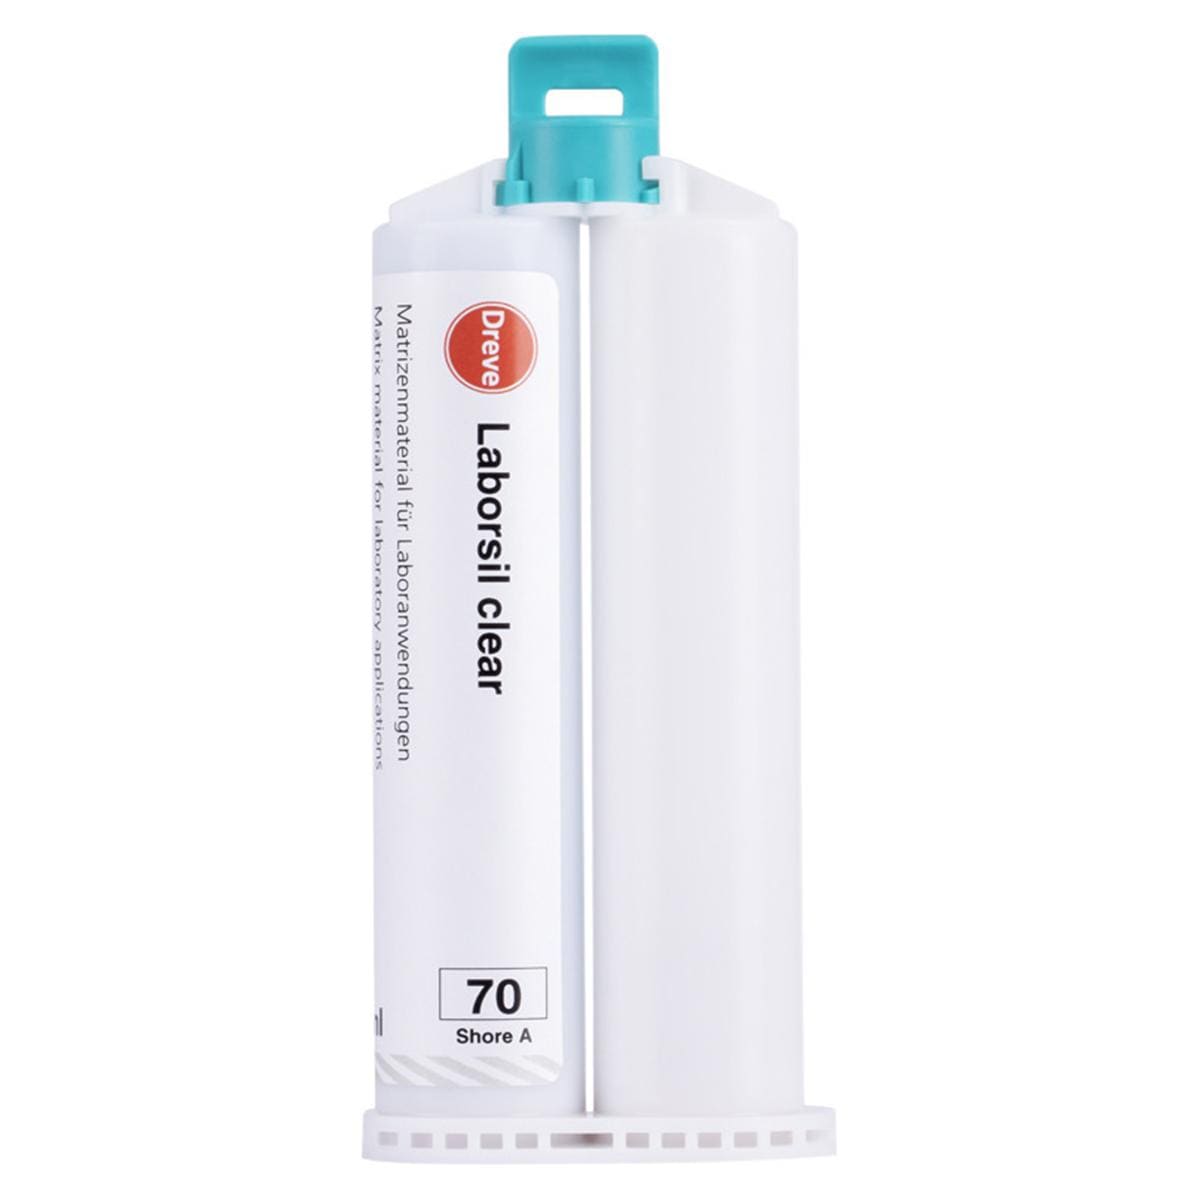 Laborsil clear - Standardpackung - Kartuschen 2 x 50 ml